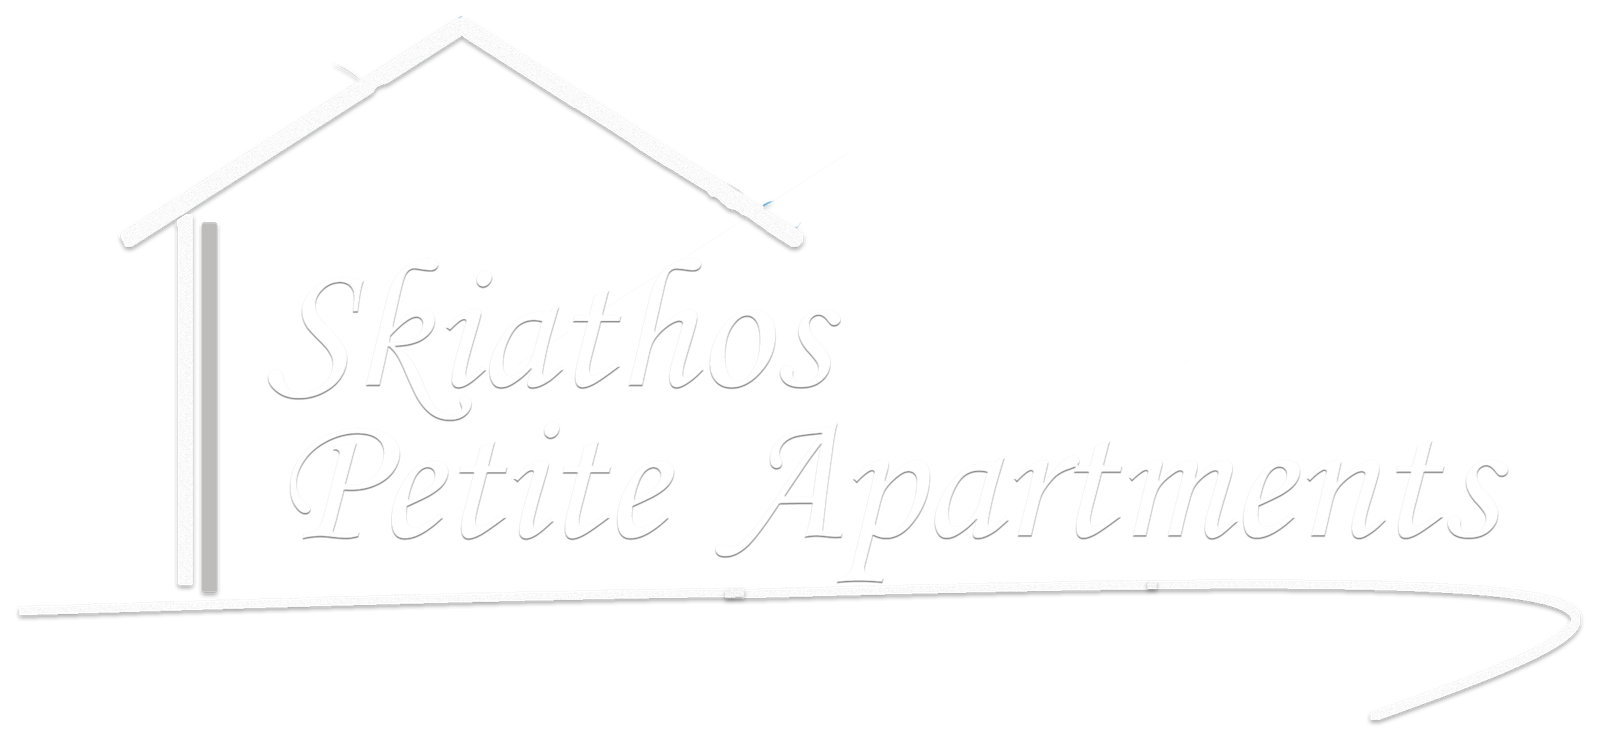 Skiathos Petite Apartments | Gift Card - Skiathos Petite Apartments